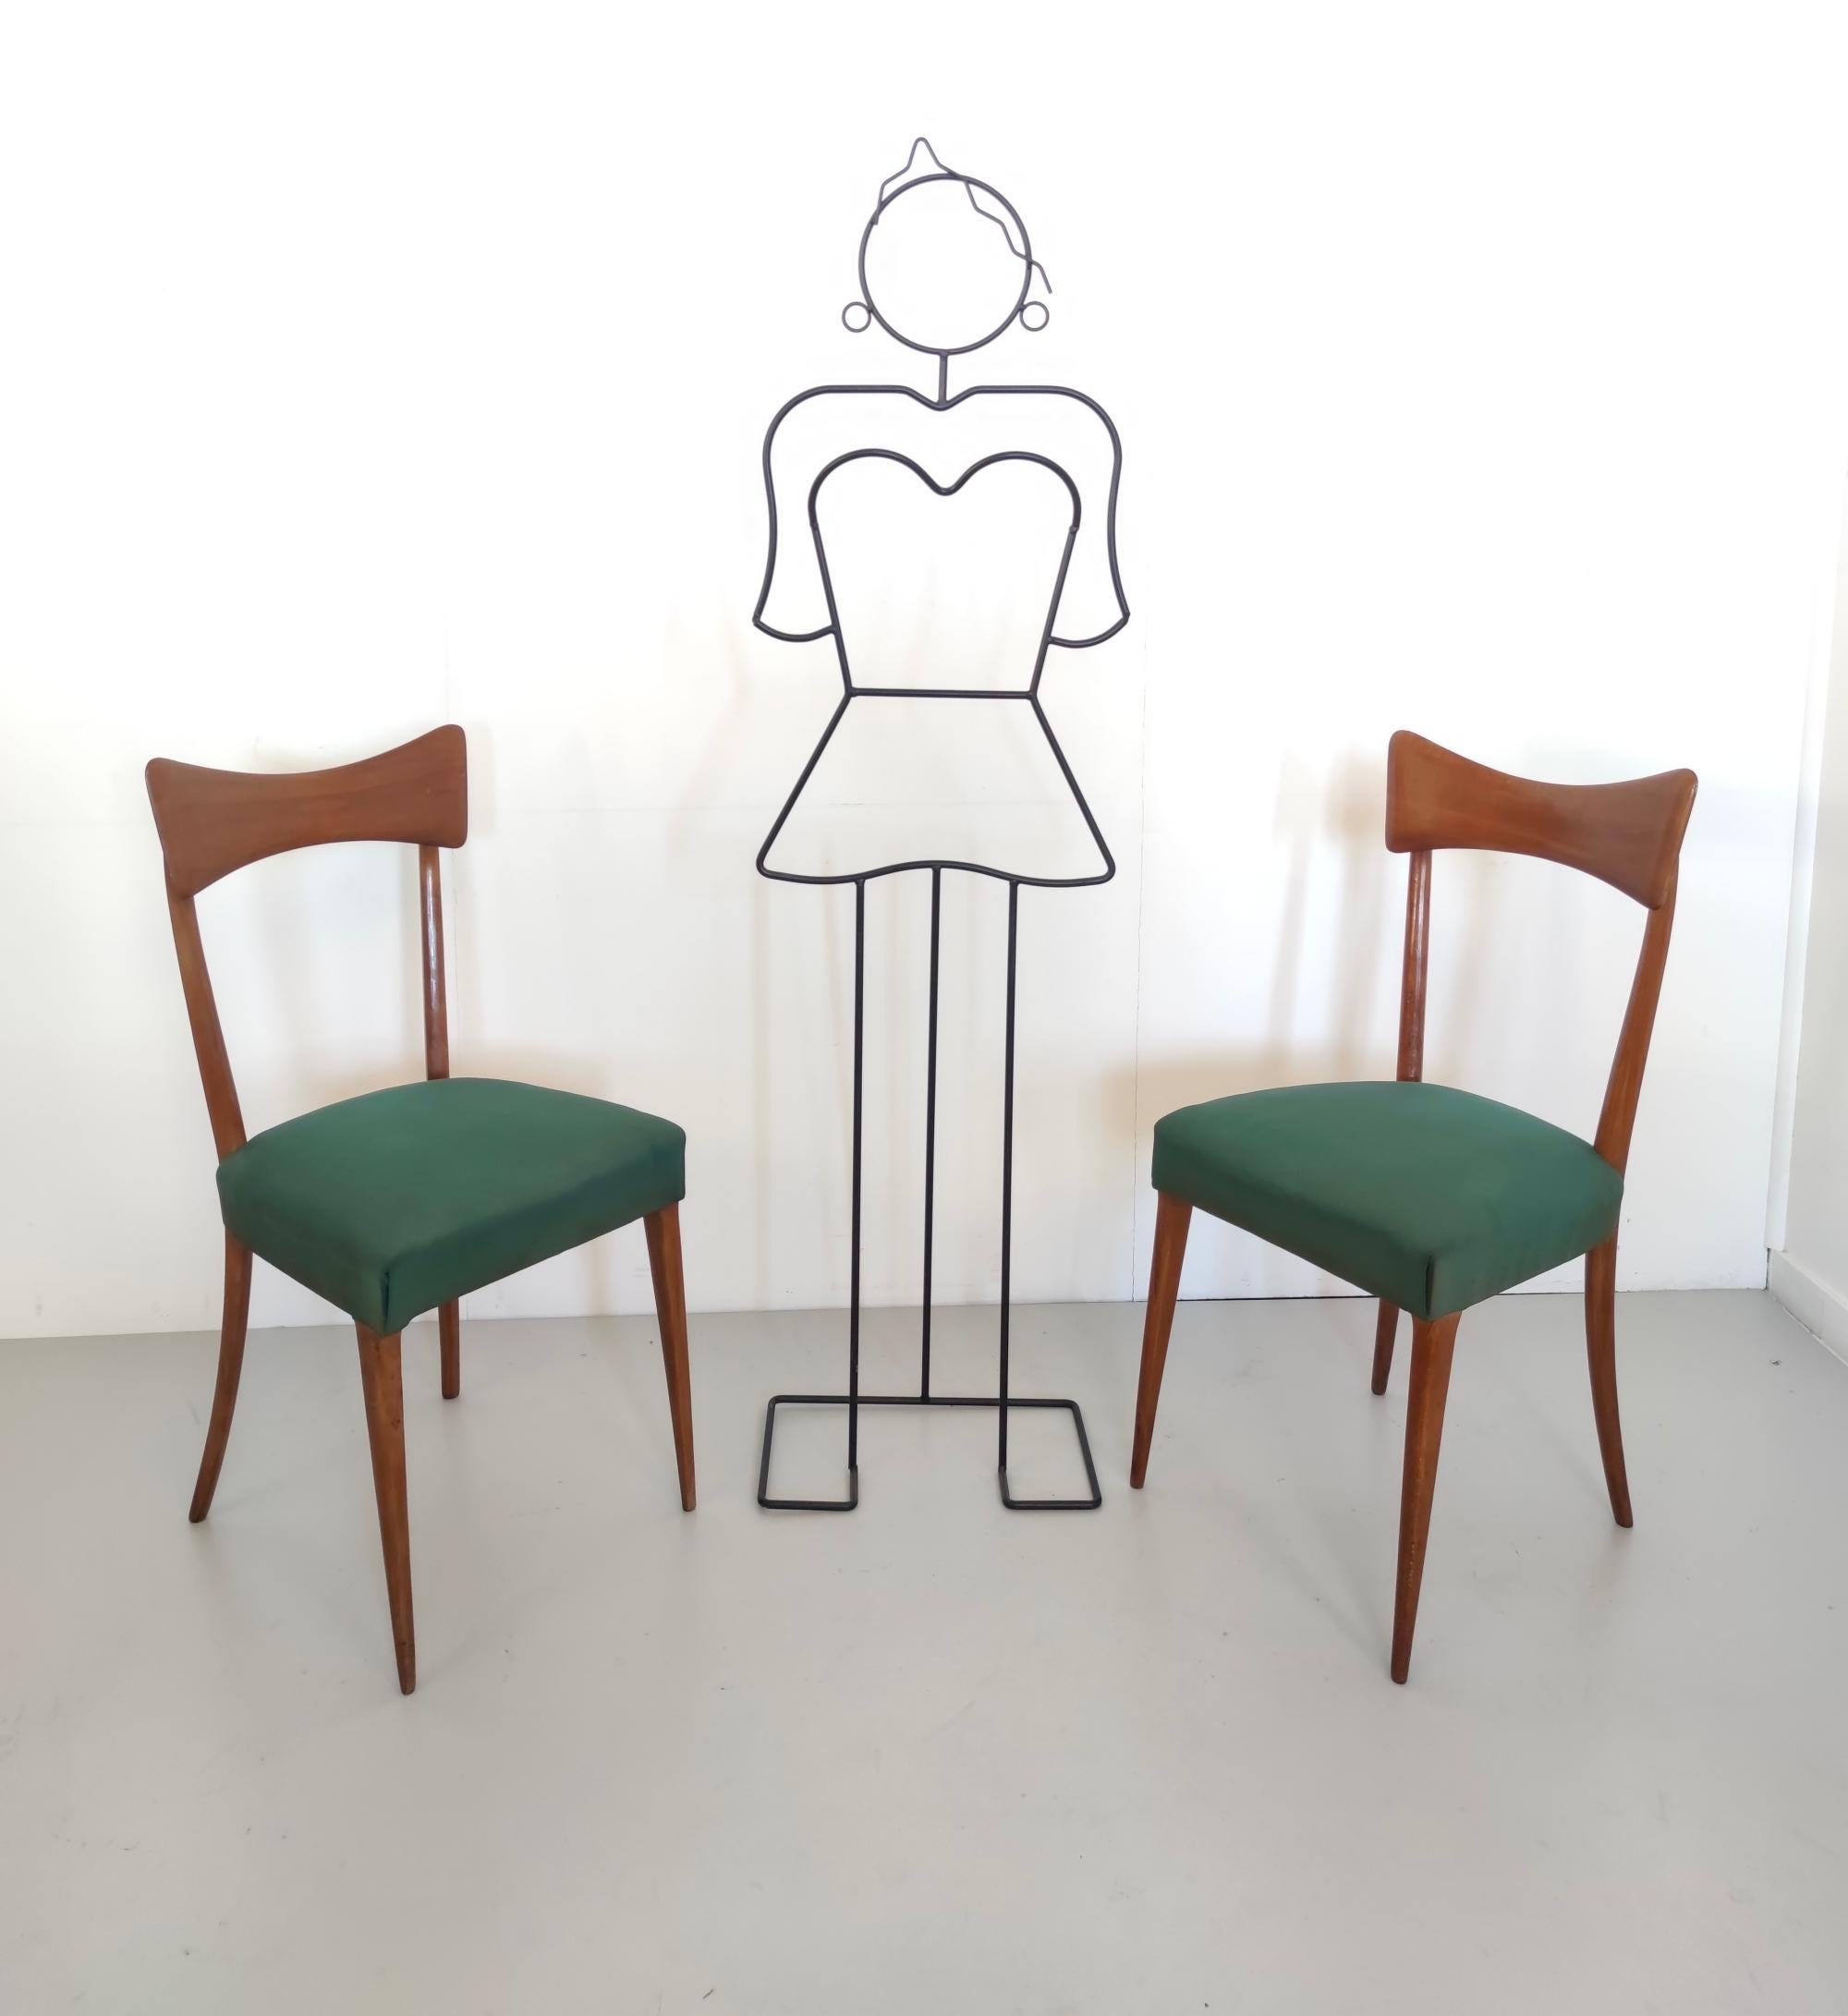 Hergestellt in Cantù, Italien, 1955.
Diese Stühle sind elegant und ein schönes, ikonisches Modell des italienischen Designs. 
Sie haben ein Gestell aus Buche und eine dunkelgrüne Wildlederpolsterung. 
Sie können leichte Gebrauchsspuren aufweisen, da